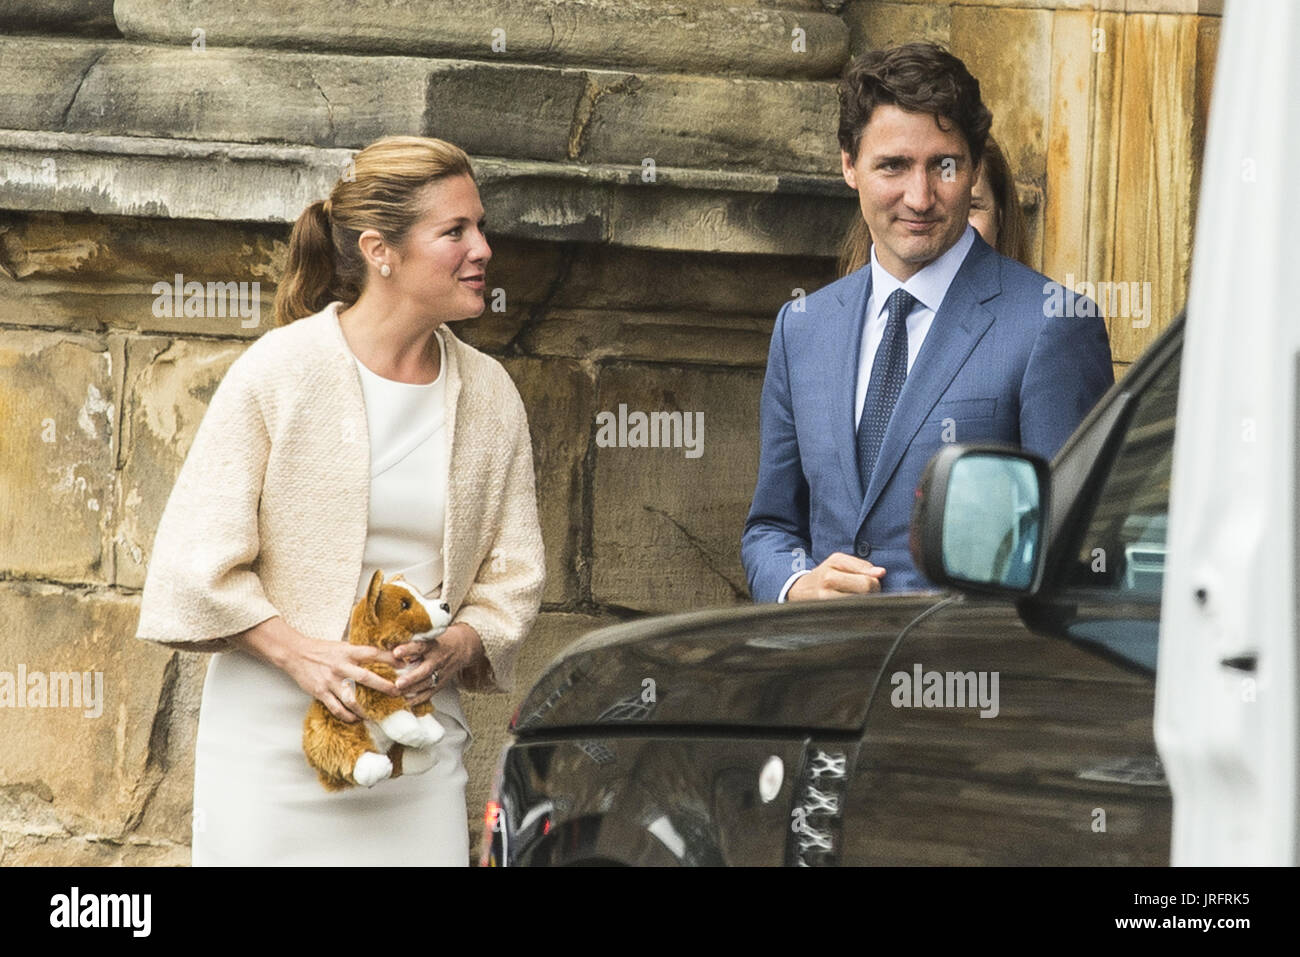 Der kanadische Premierminister verlässt nach einem Treffen mit Königin Elzabeth II in Edinburgh Holyrood Palace.  Mitwirkende: Justin Trudeau, Sophie Grégoire Trudeau wo: Edinburgh, Vereinigtes Königreich bei: Kredit-5. Juli 2017: Euan Cherry/WENN.com Stockfoto